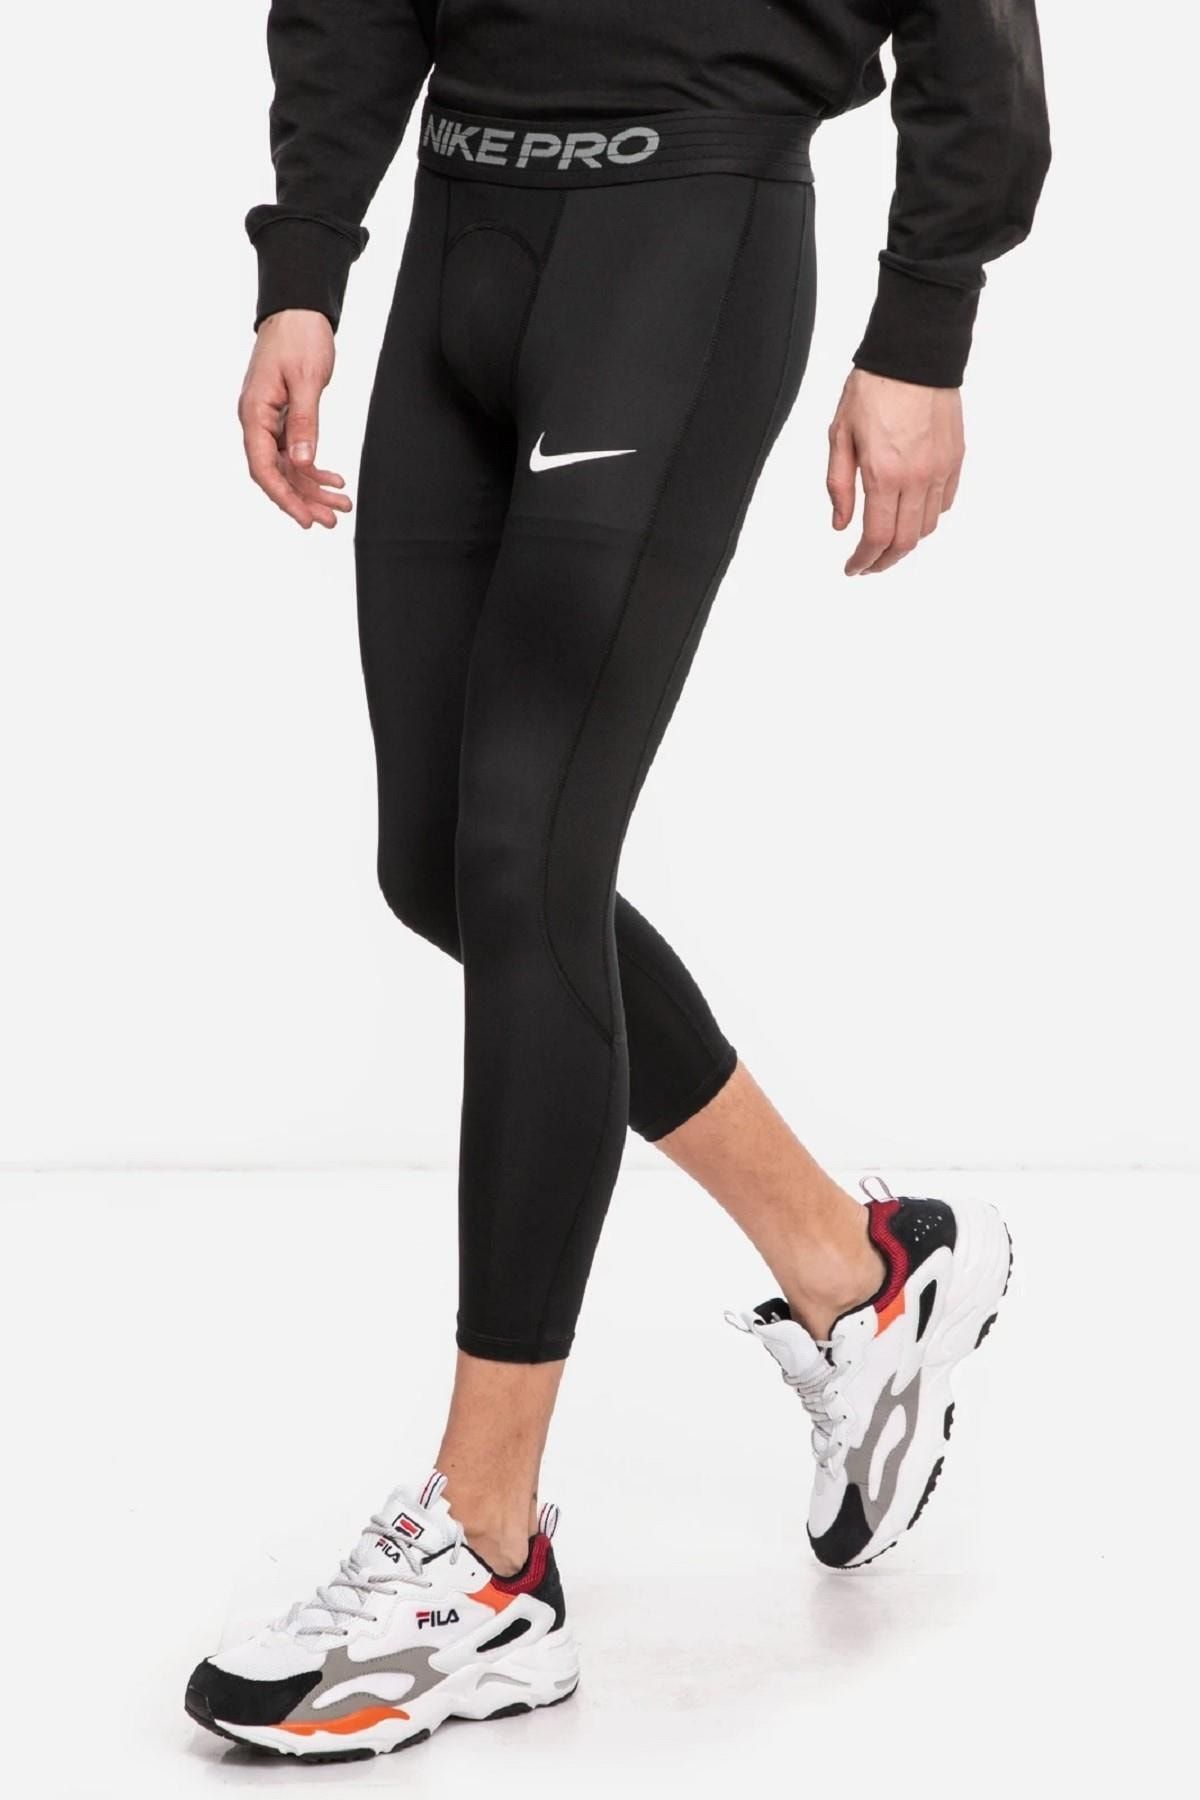 Nike Pro Men's Tights Dri-fit 3/4 Siyah Erkek Taytı Fiyatı, Yorumları -  Trendyol